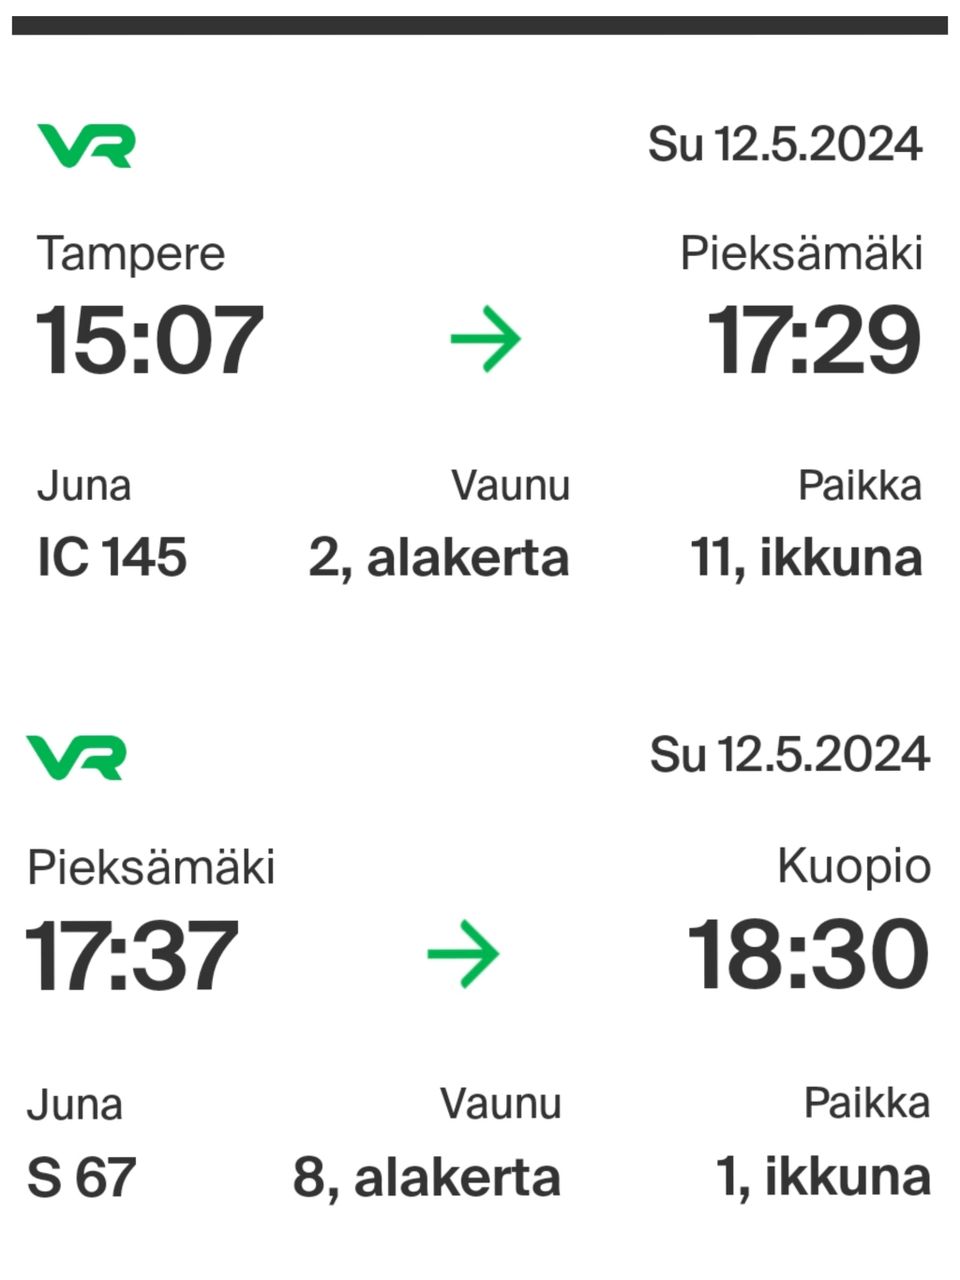 Junalippu Tampere - Kuopio 12.5.2024